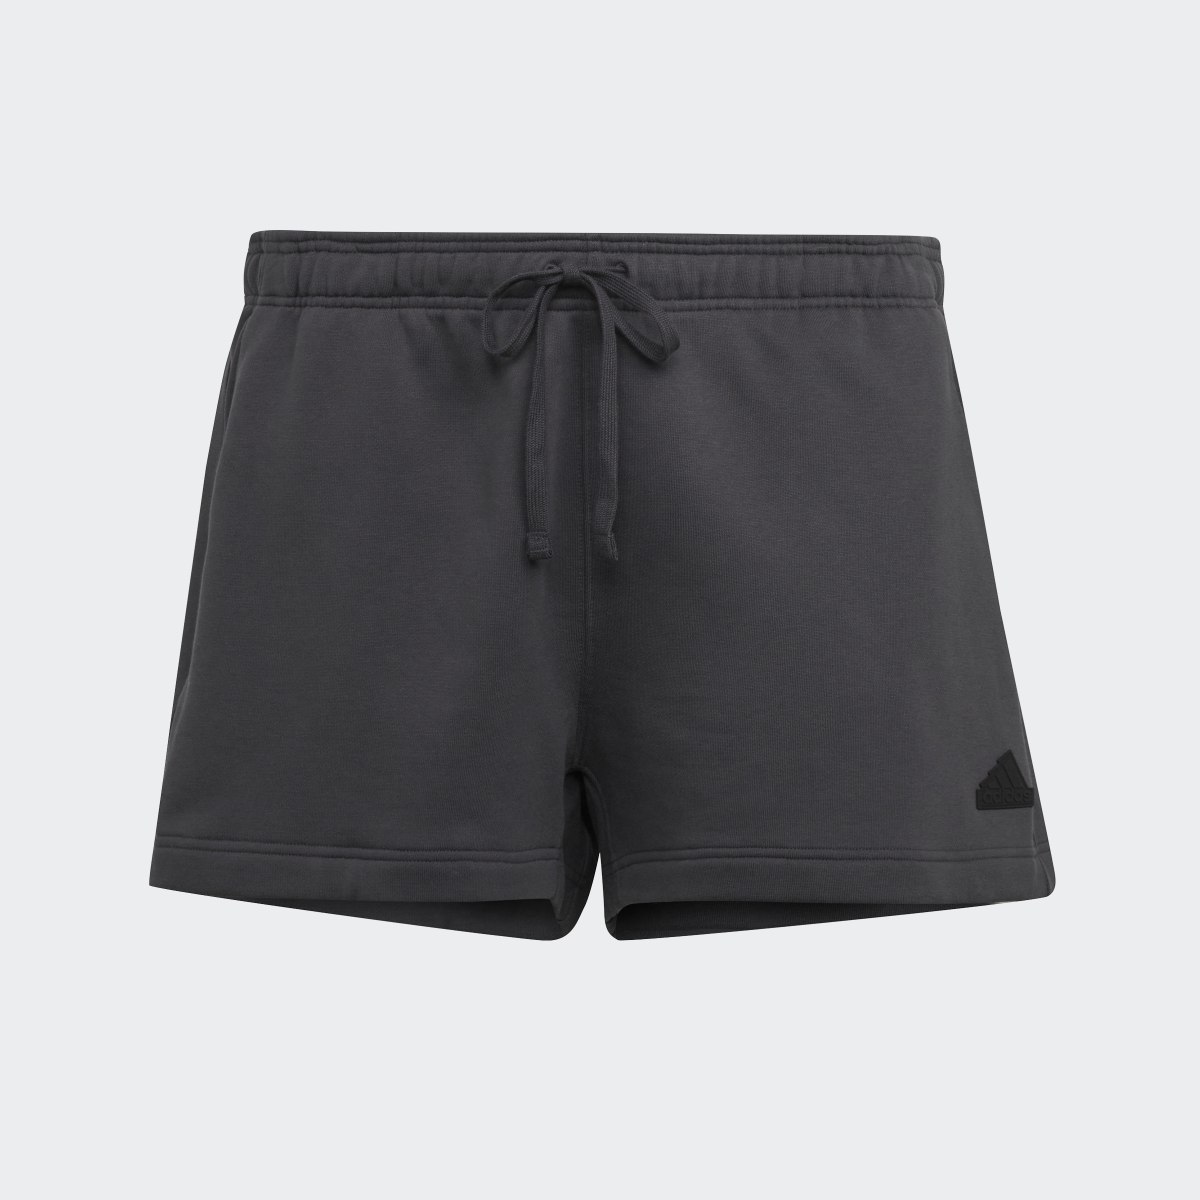 Adidas Sweat Shorts (Plus Size). 5